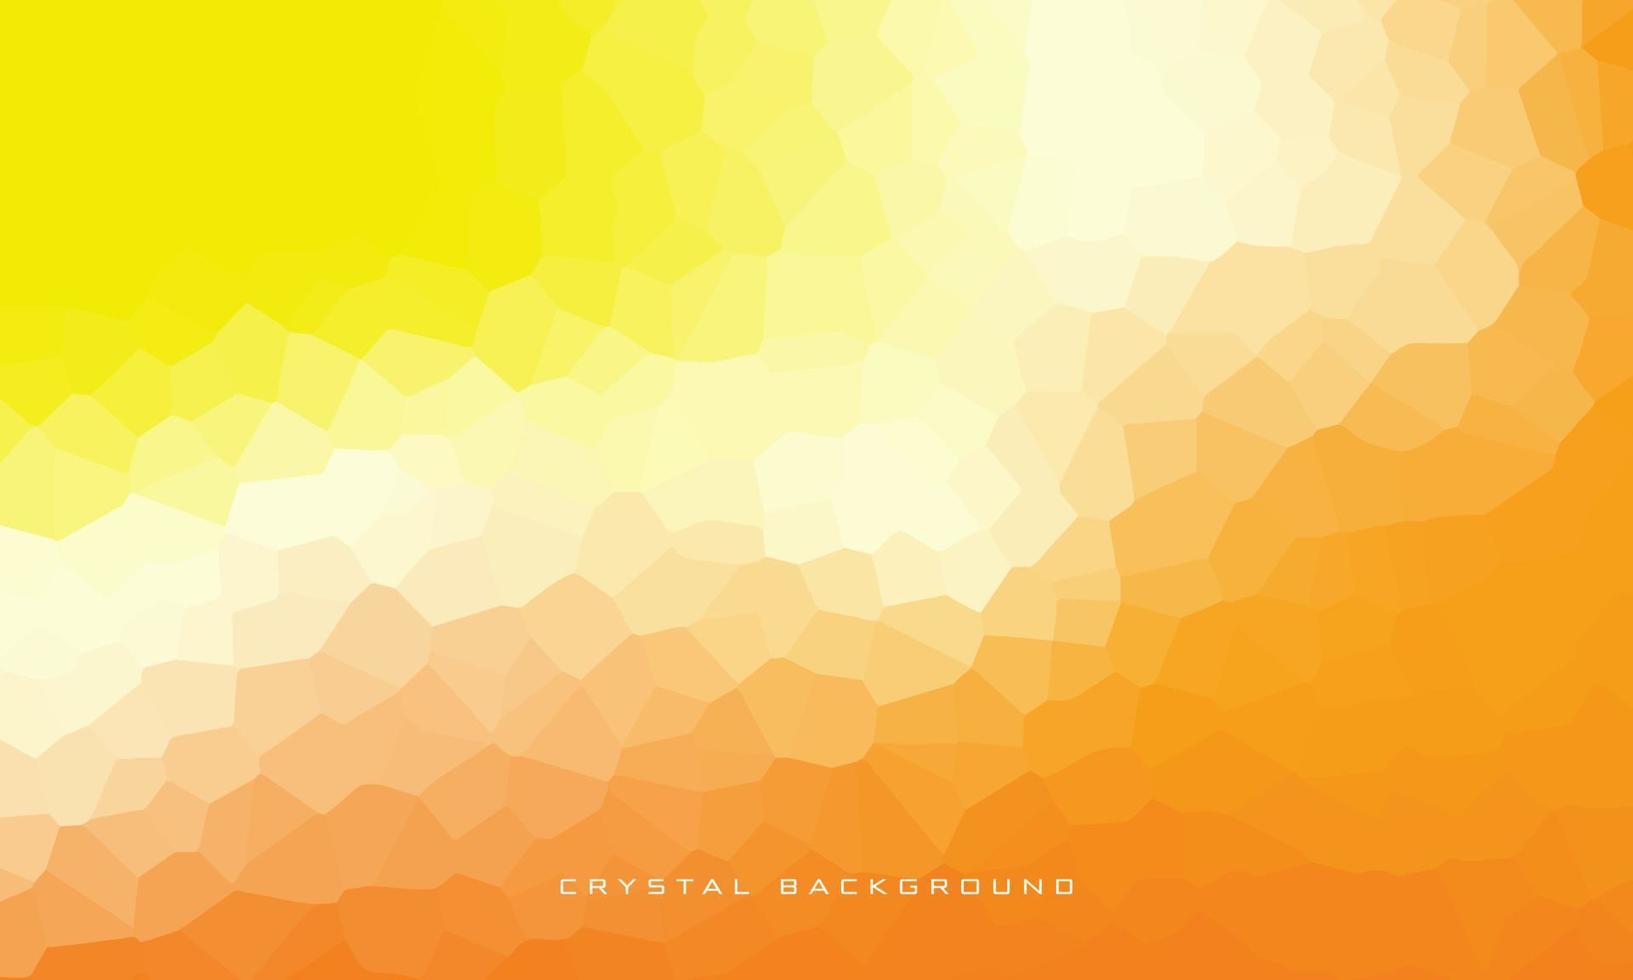 Farbverlauf Kristallhintergrund mit gelber Dominanz. eps10-Vektordesign vektor